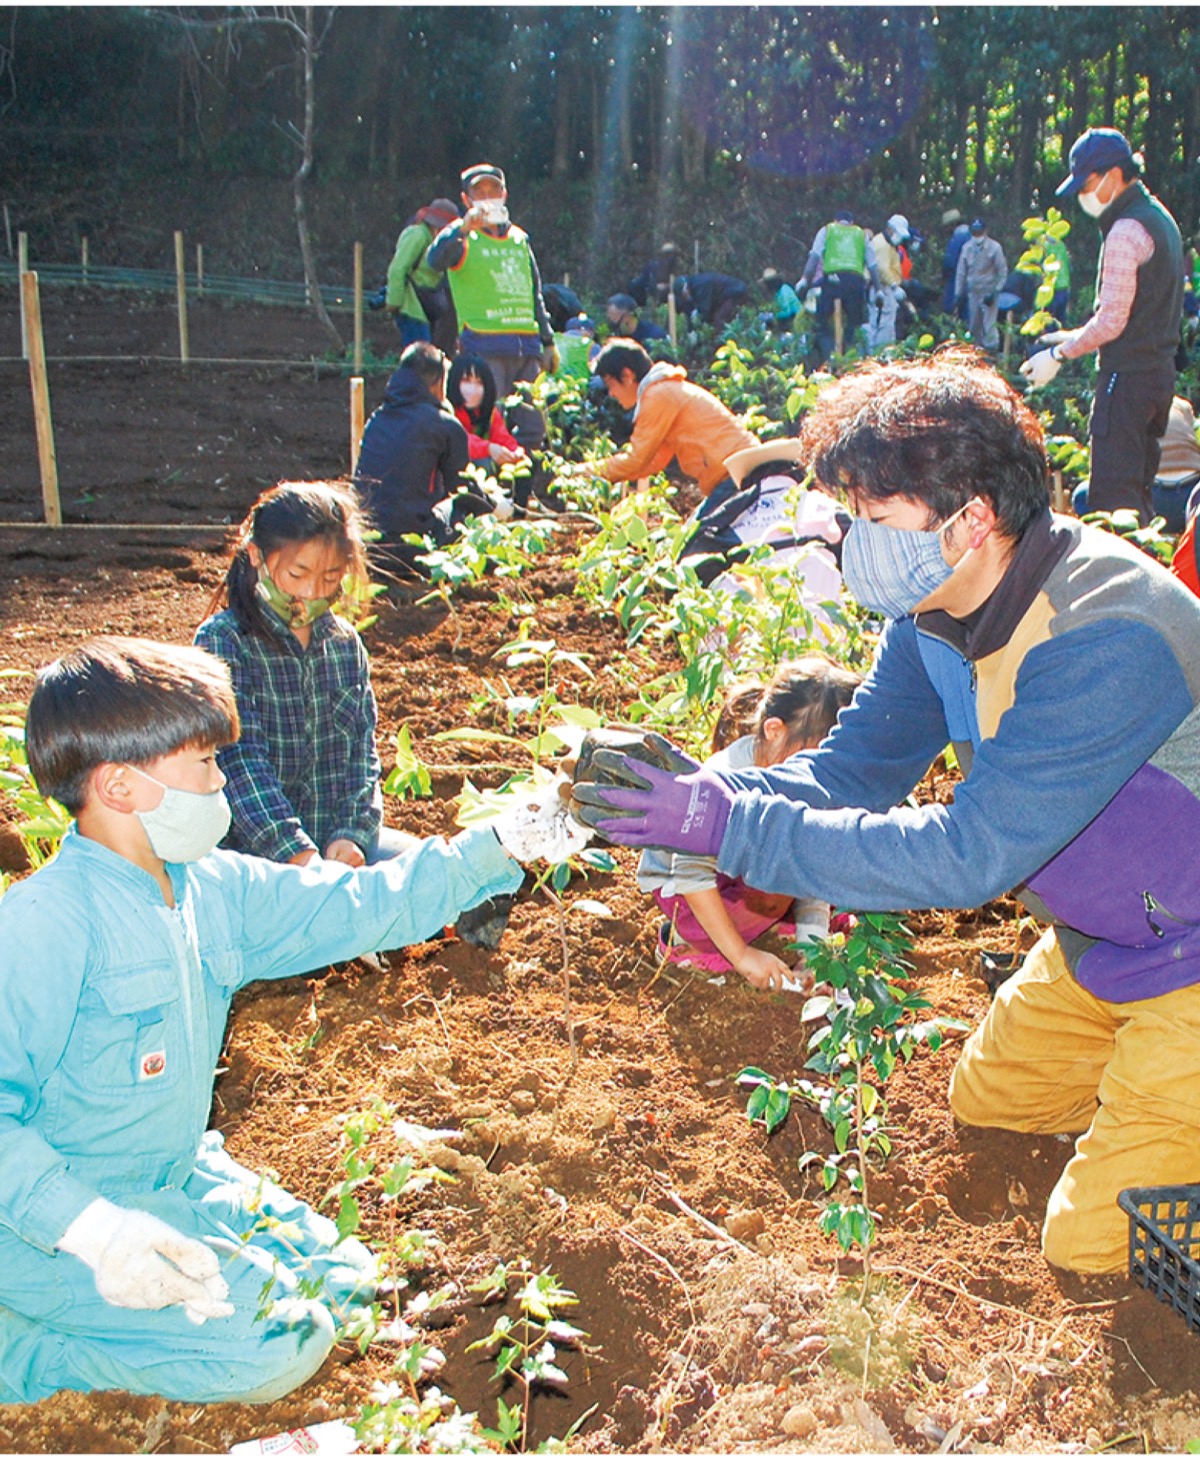 １５００本の苗木を手植え 宮脇昭追悼植樹祭で